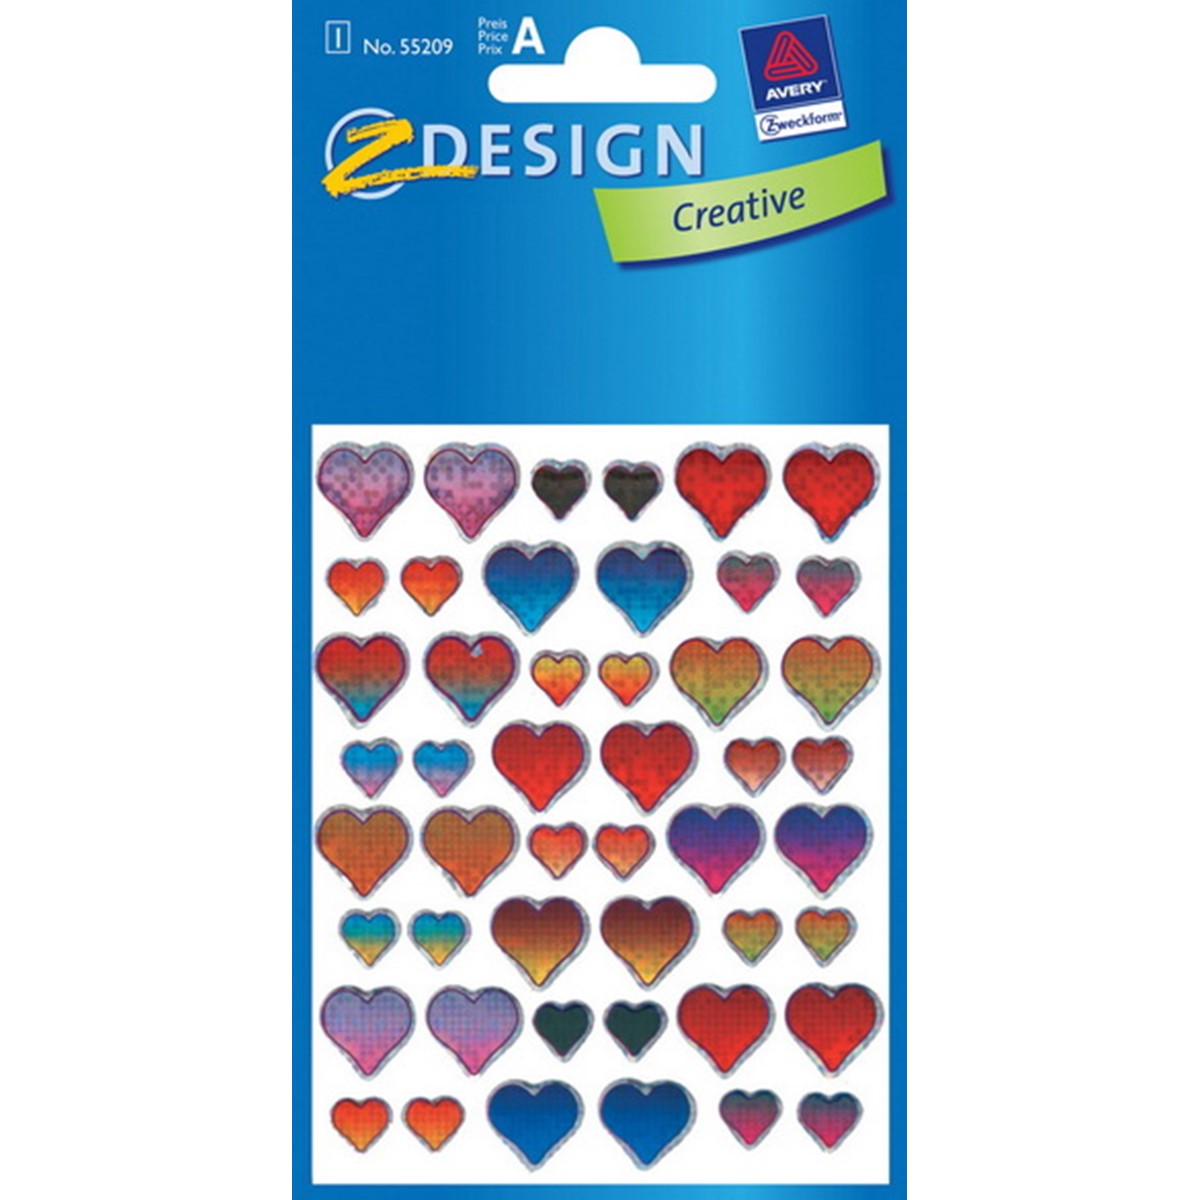 Z-Design 55209 3D Sticker Herzen, 3D Effekt